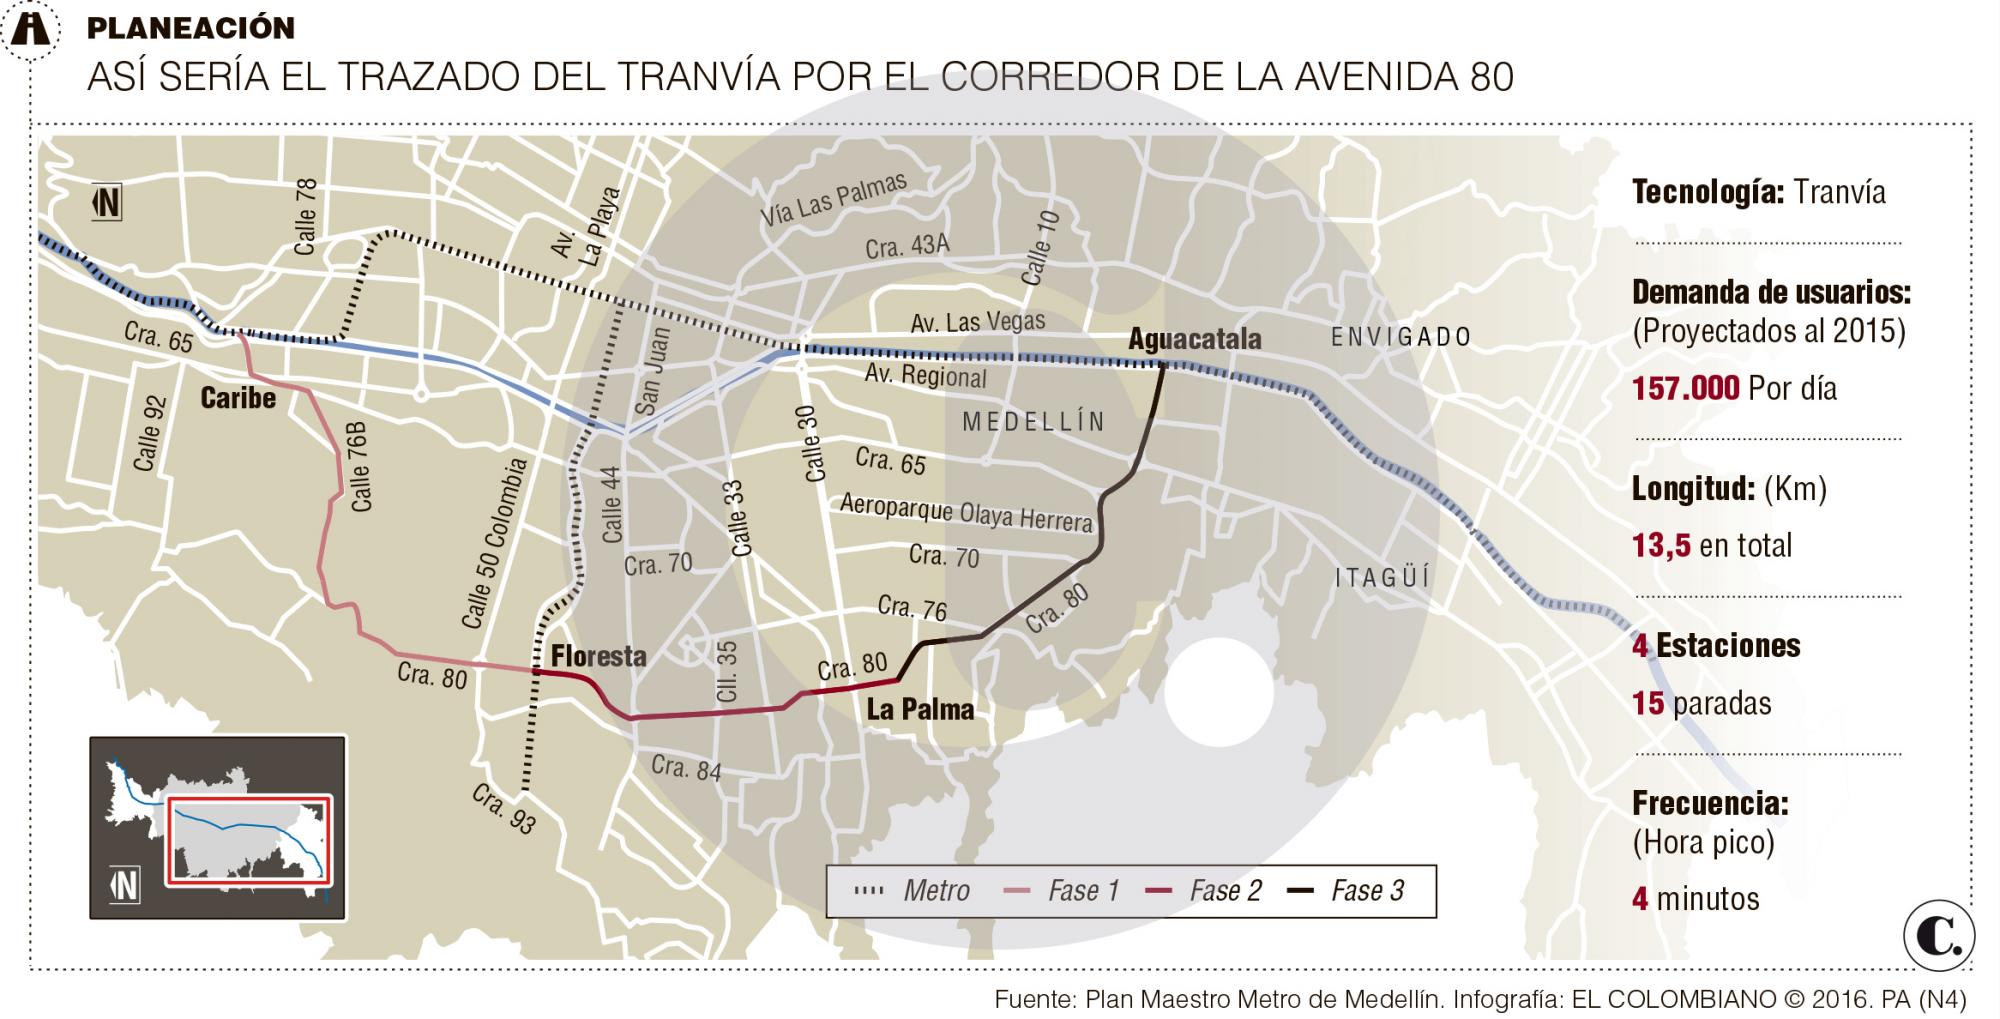 Estrategia del alcalde Gutiérrez para financiar el tranvía de la 80